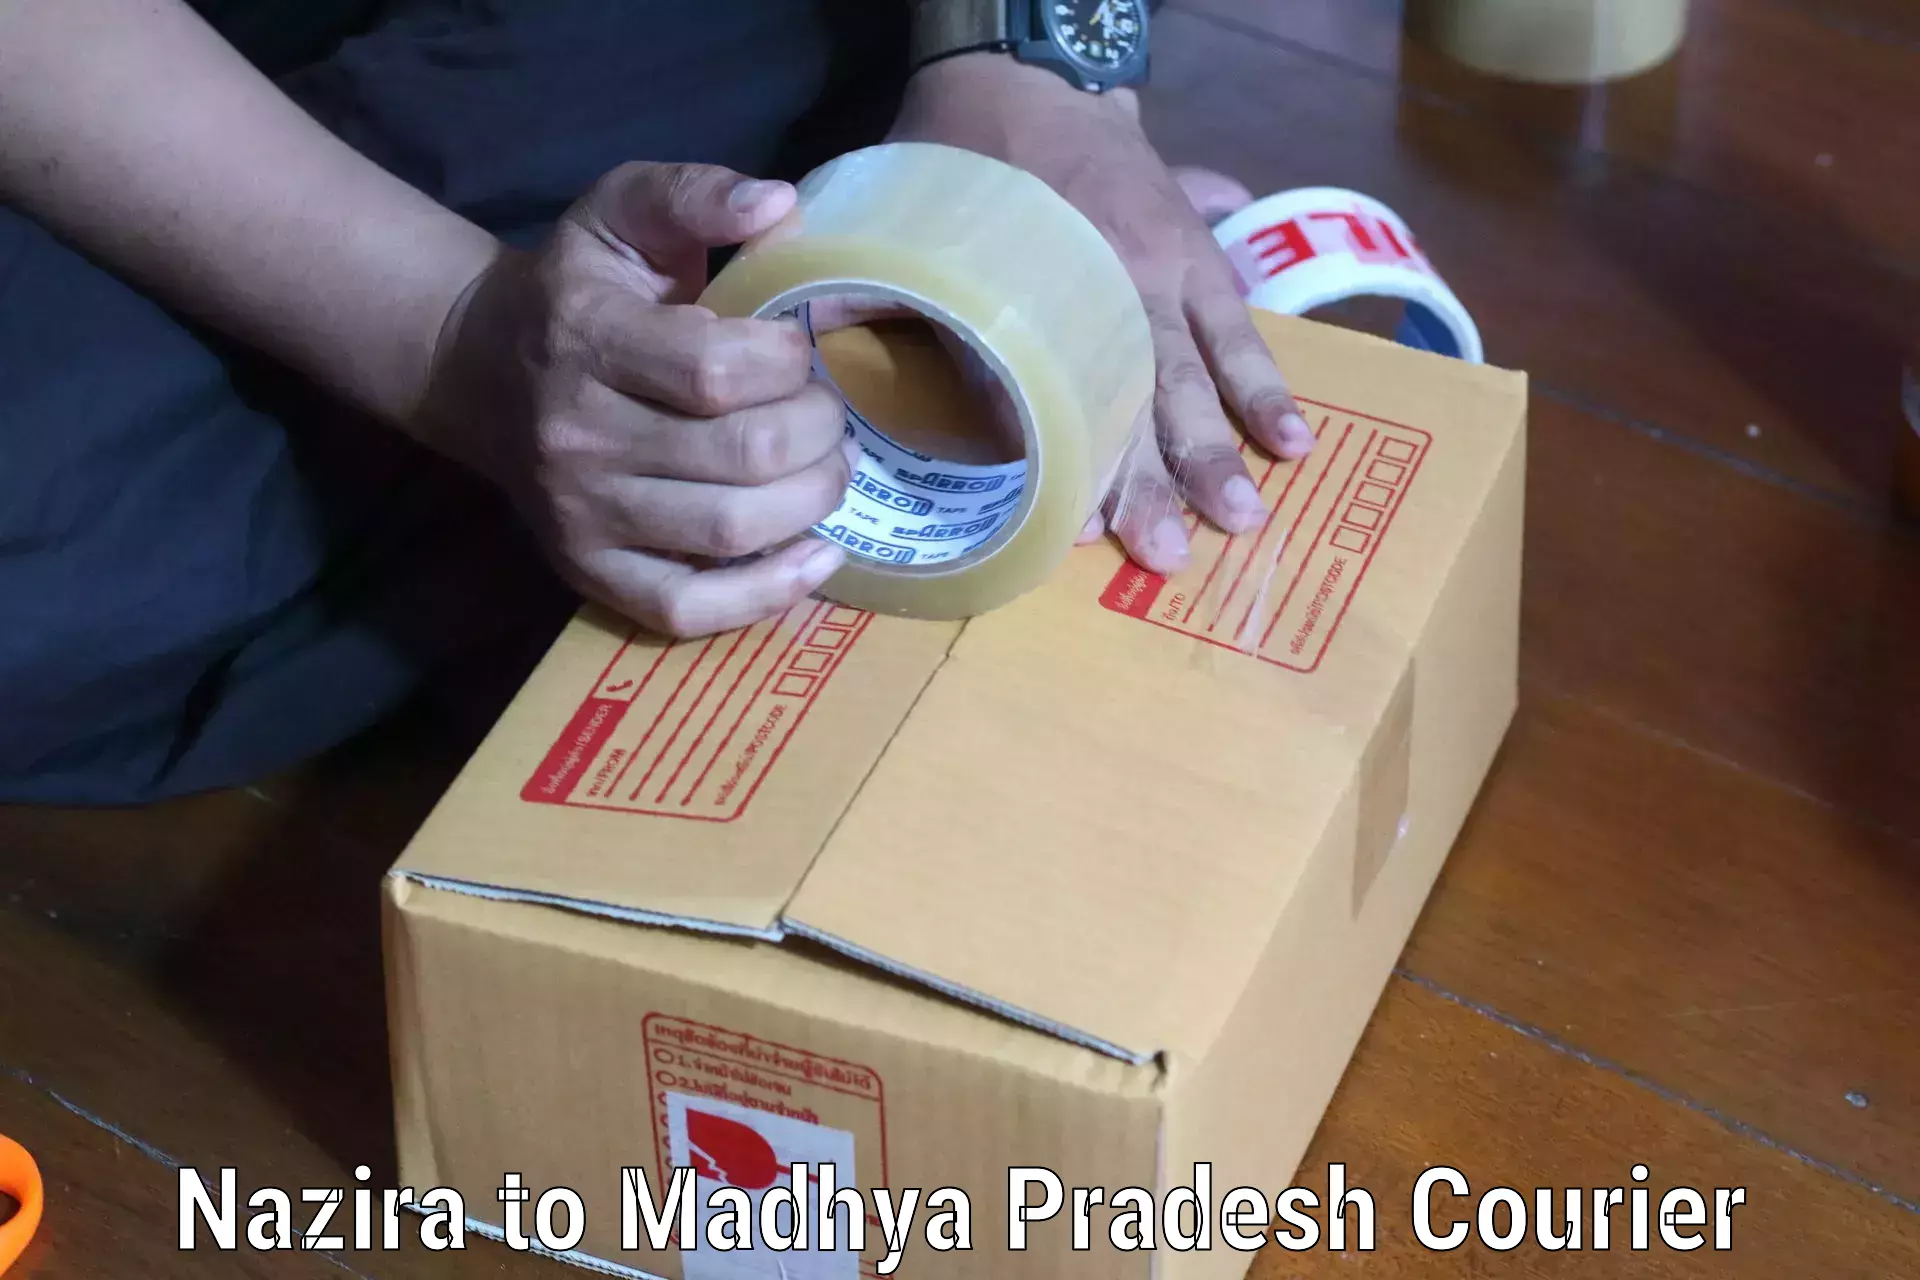 Advanced shipping network Nazira to Vidisha